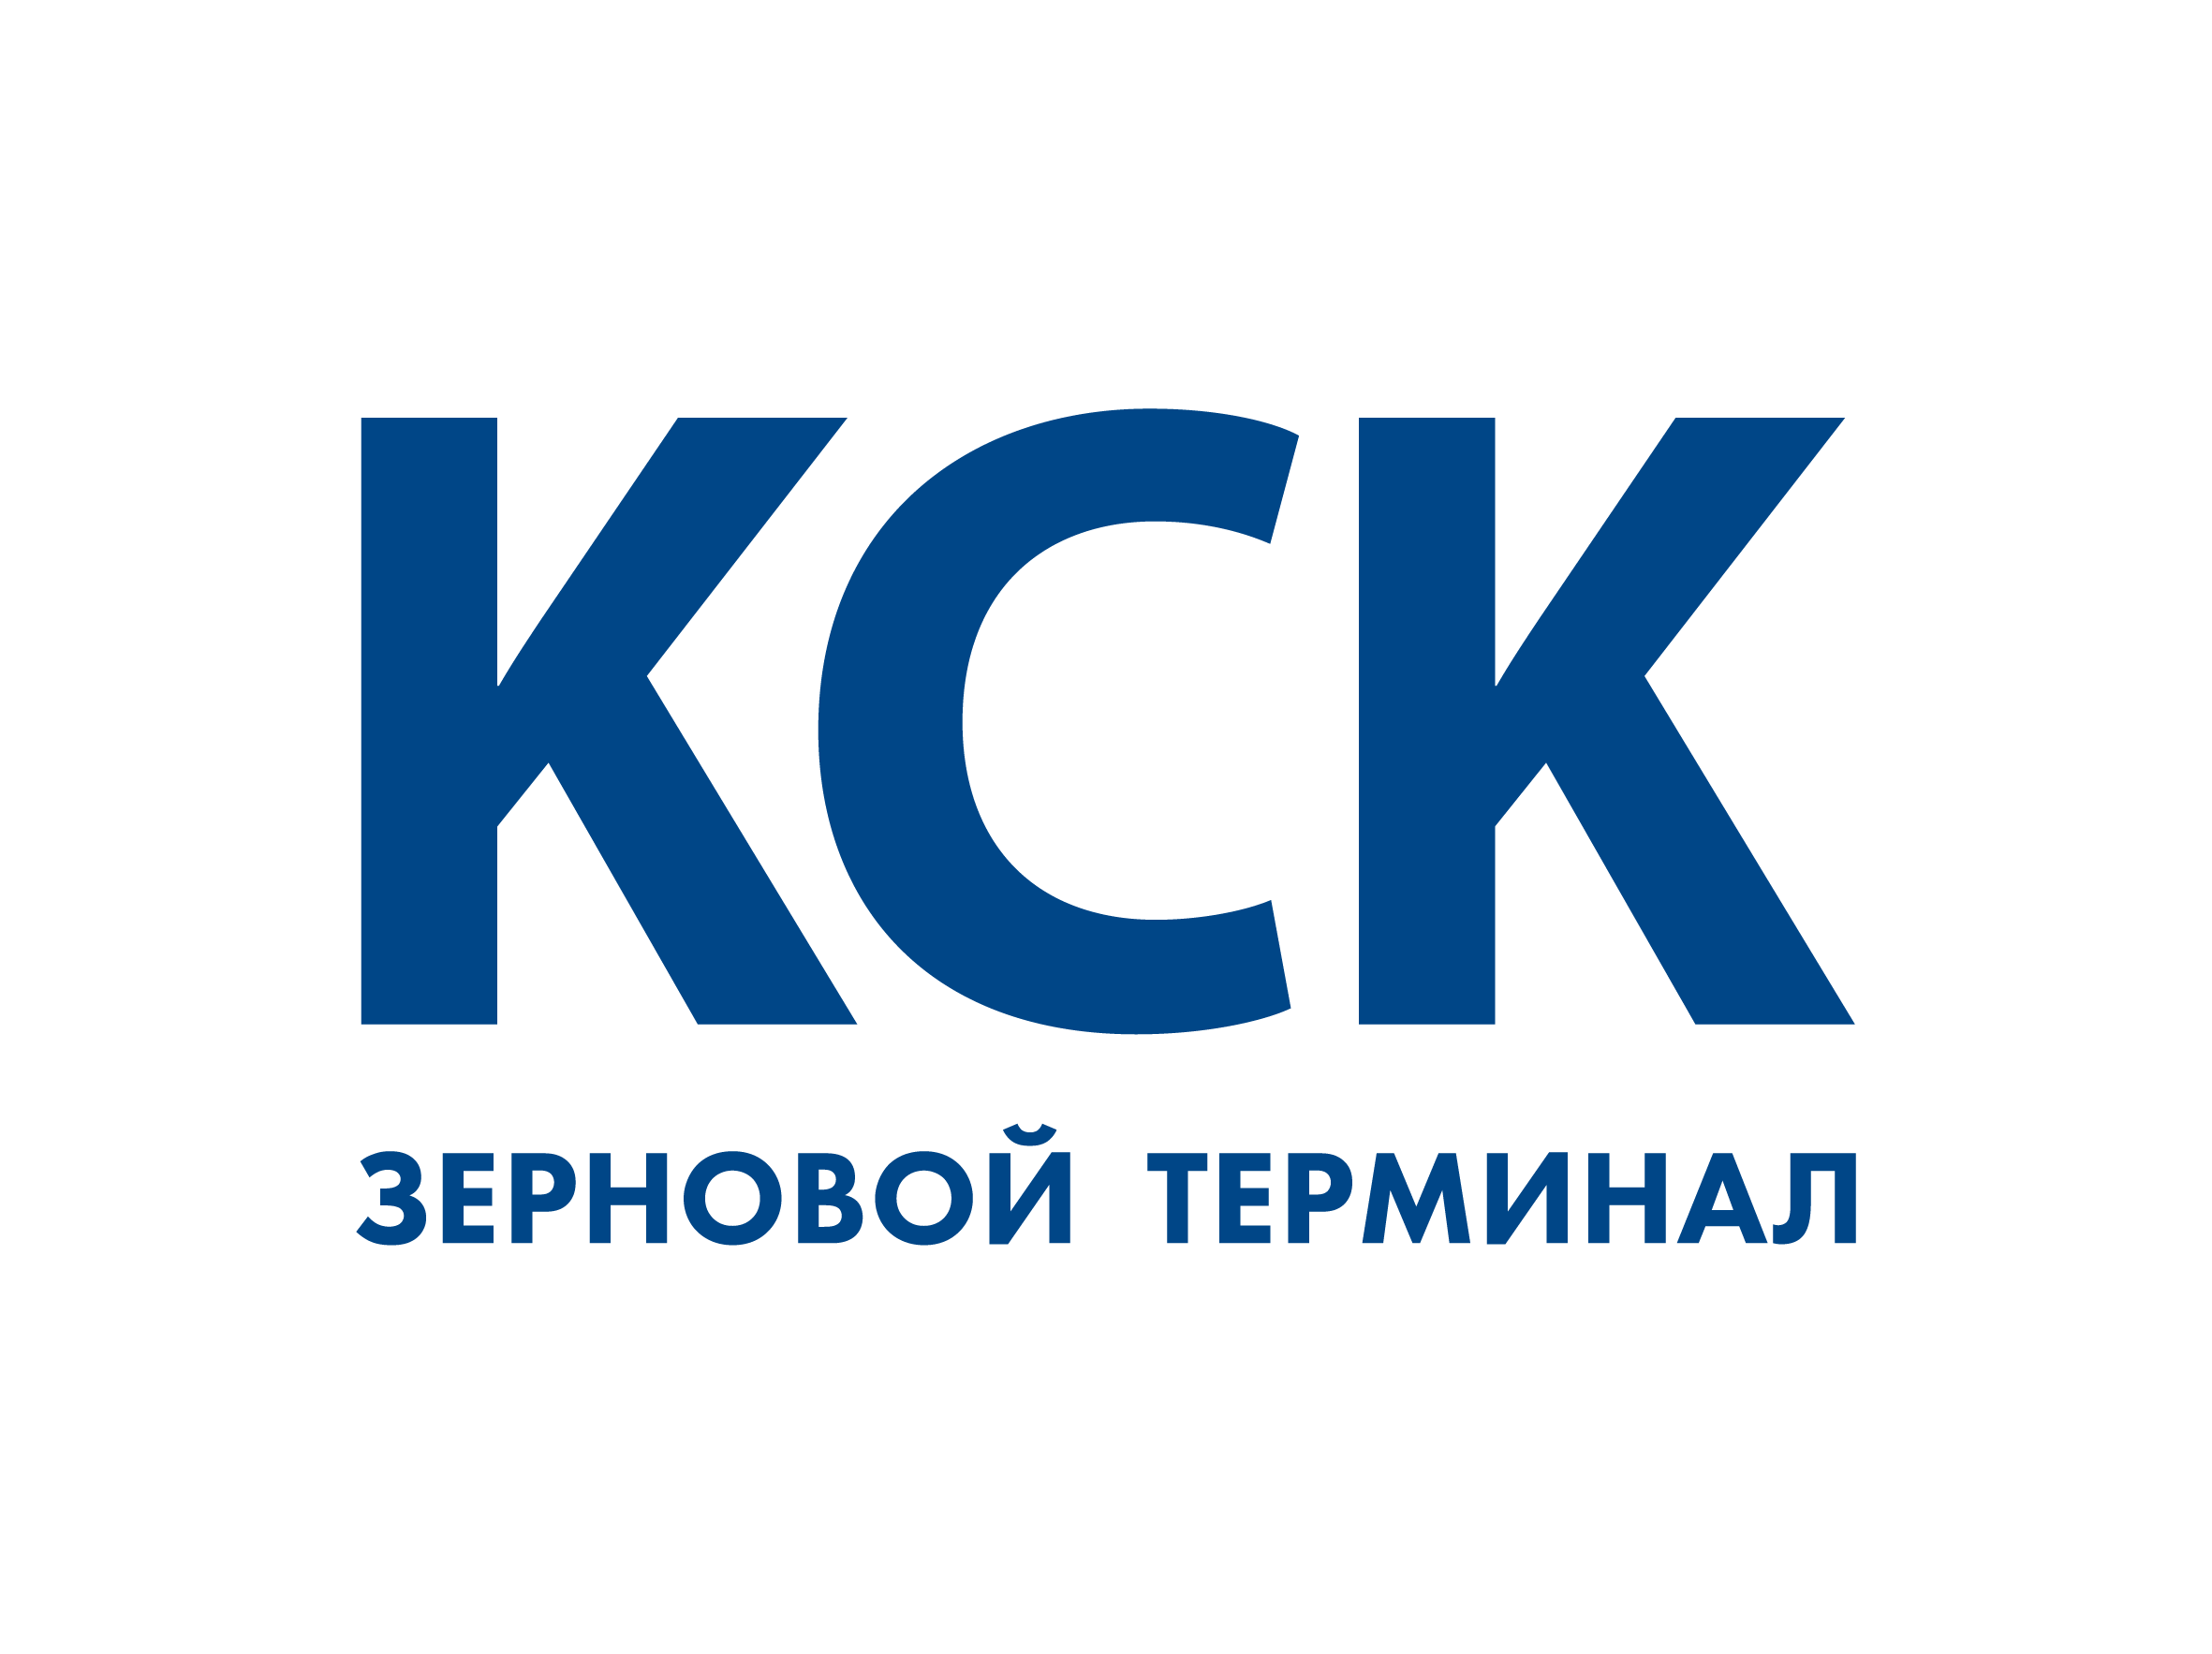 KSK_logo